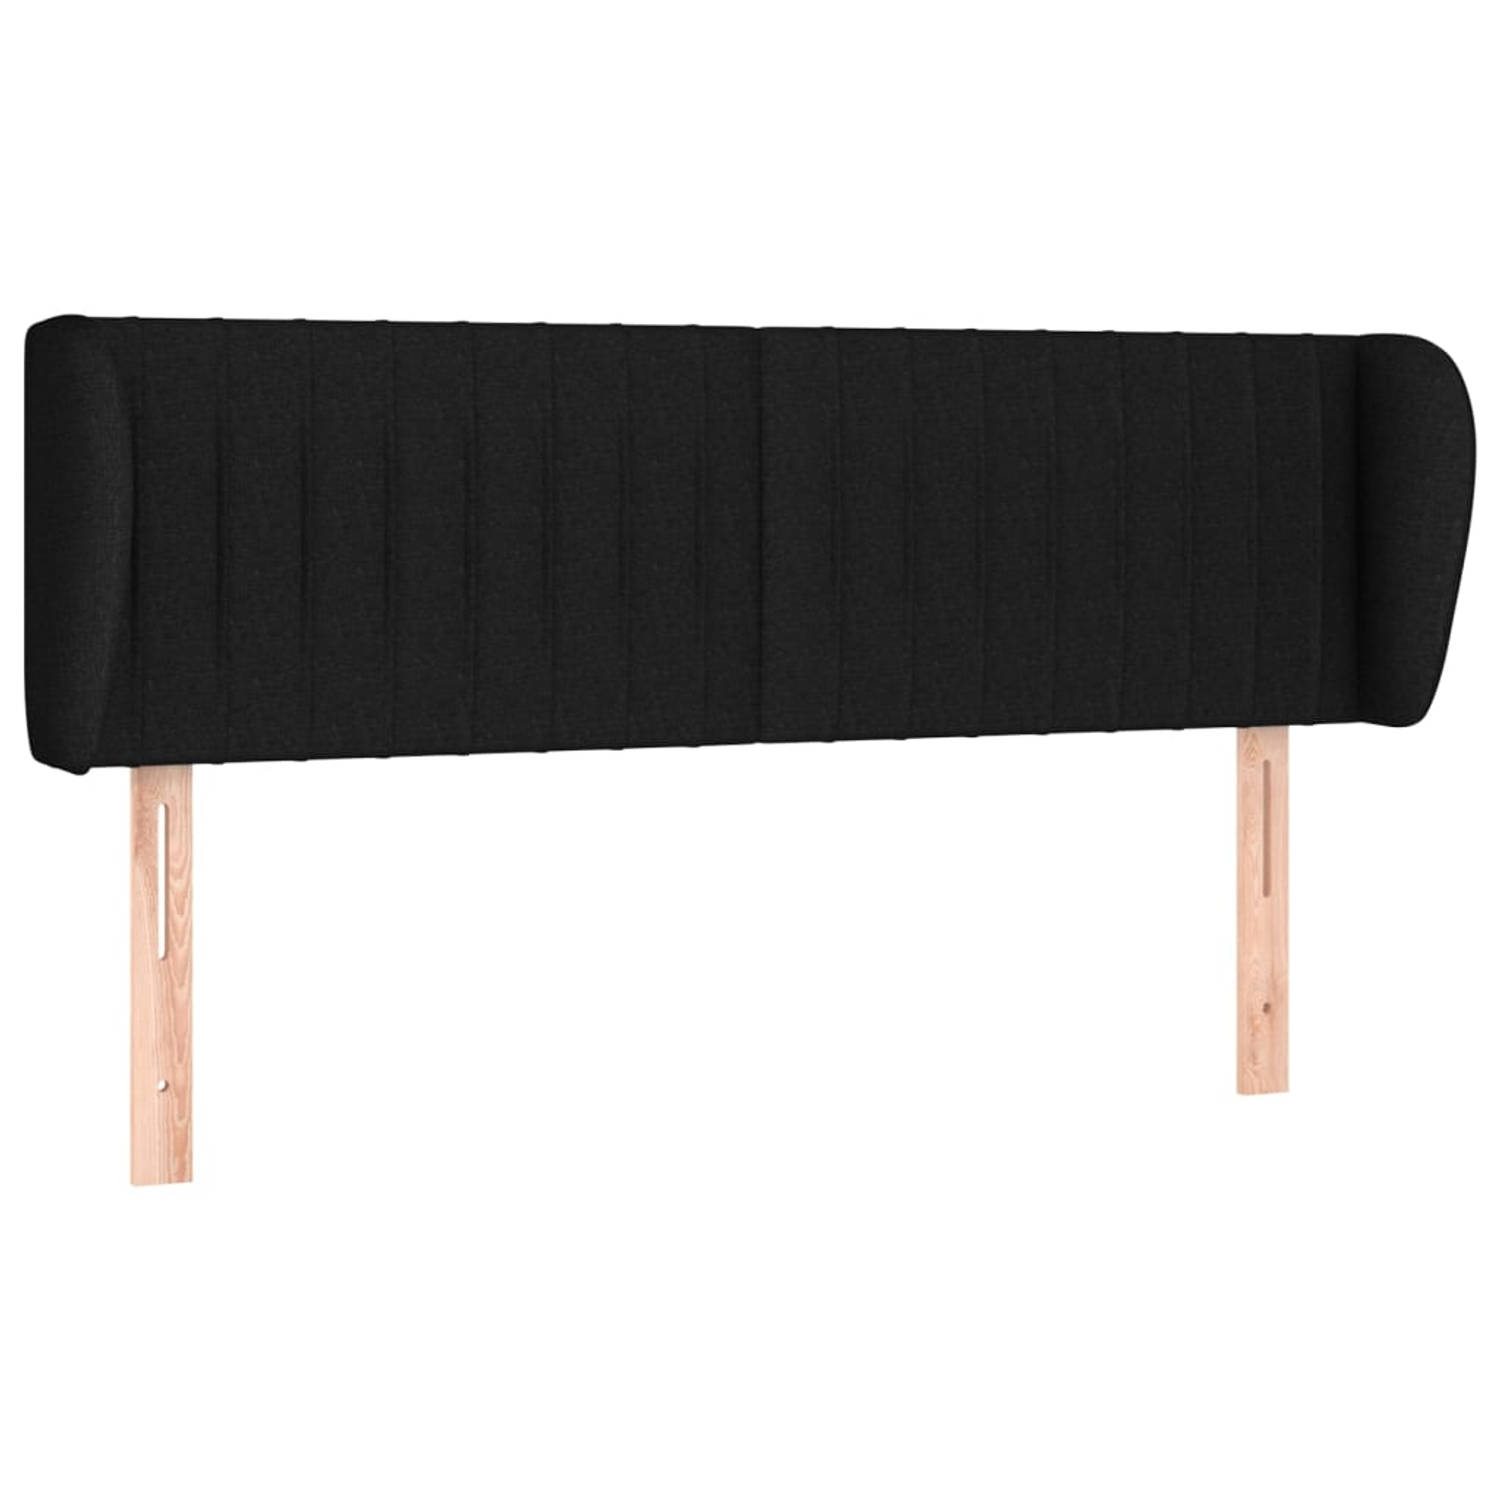 The Living Store Hoofdbord - Hoofdeind zwart stof - Verstelbare hoogte - Comfortabele ondersteuning - Duurzaam materiaal - Stevige houten poten - For 147 x 23 x 78/88 cm